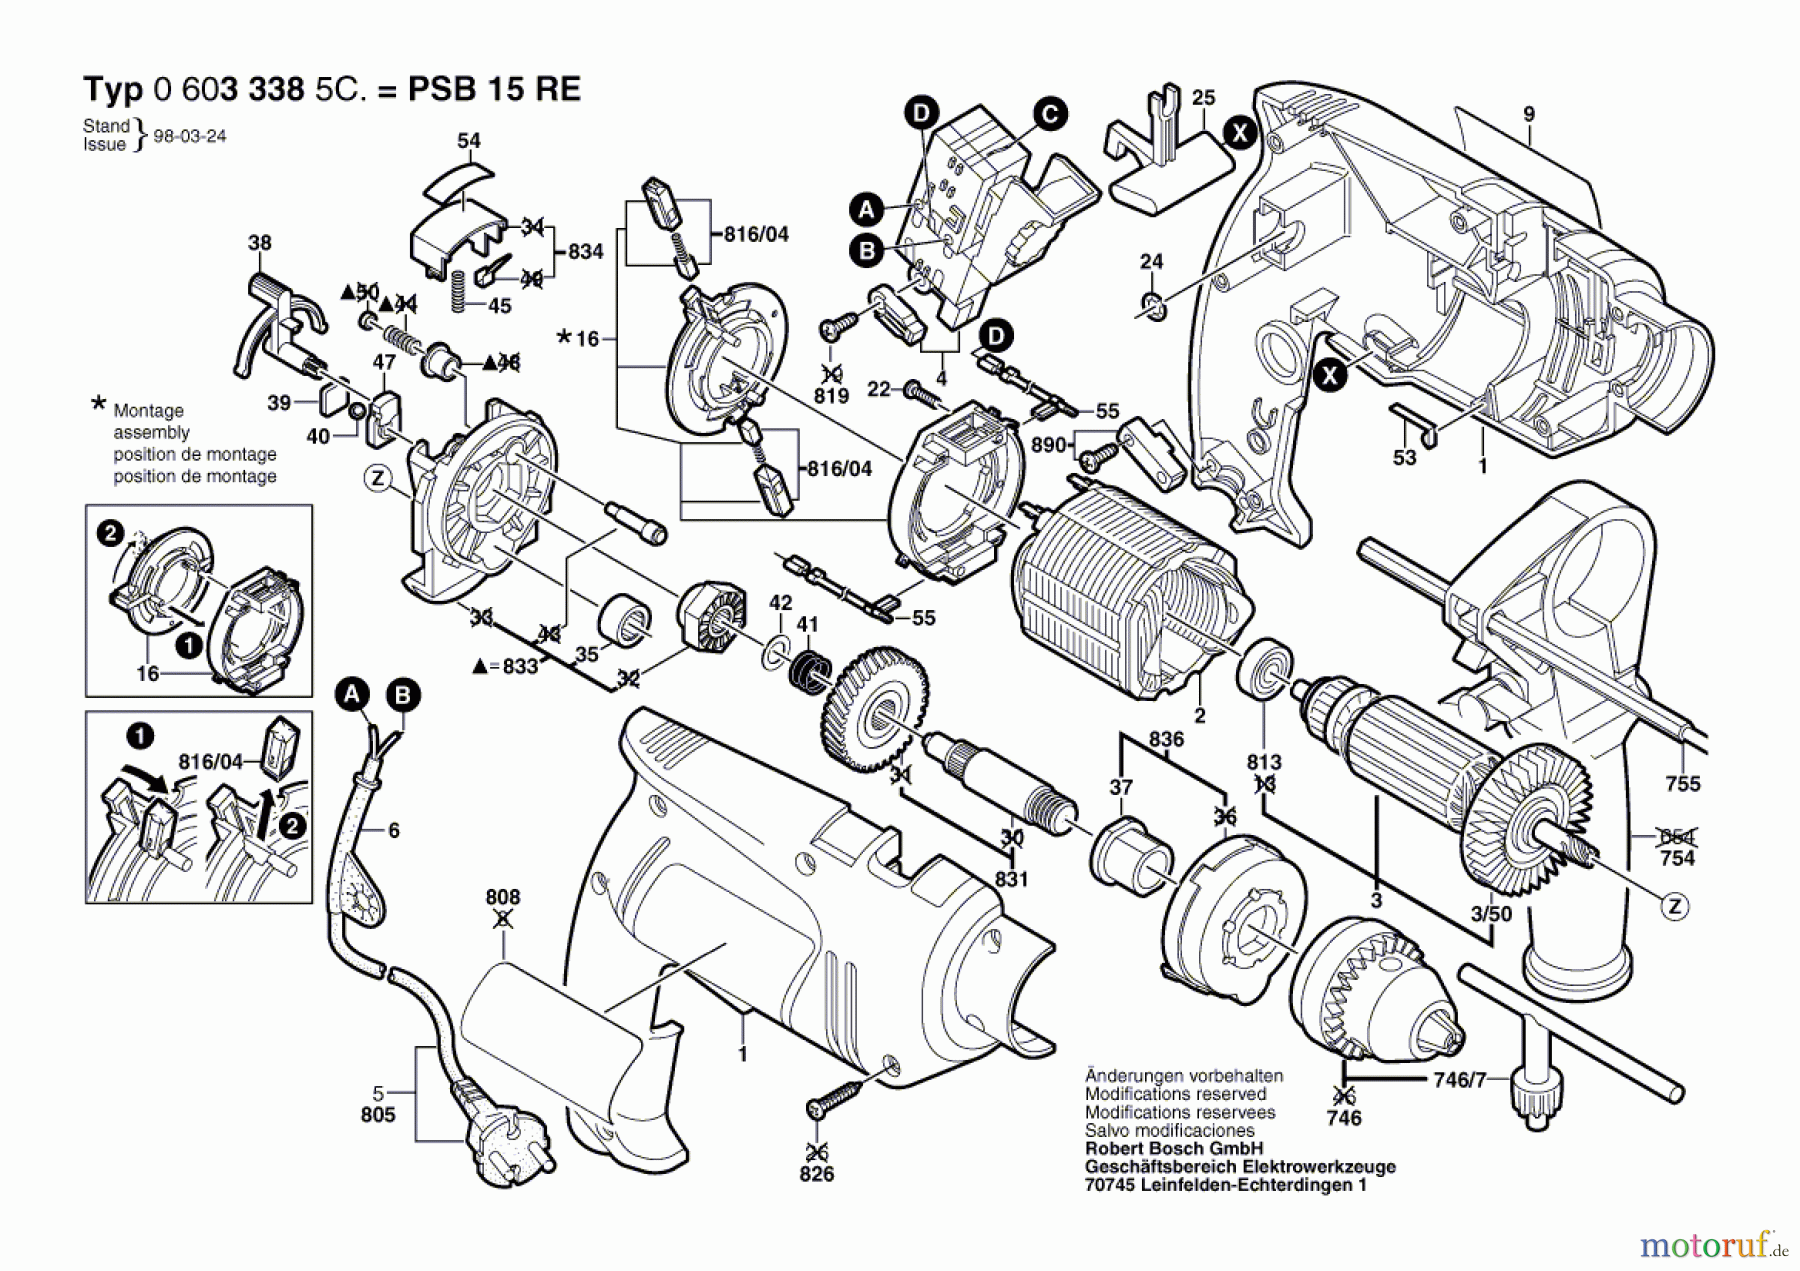  Bosch Werkzeug Schlagbohrmaschine PSB 15 RE Seite 1